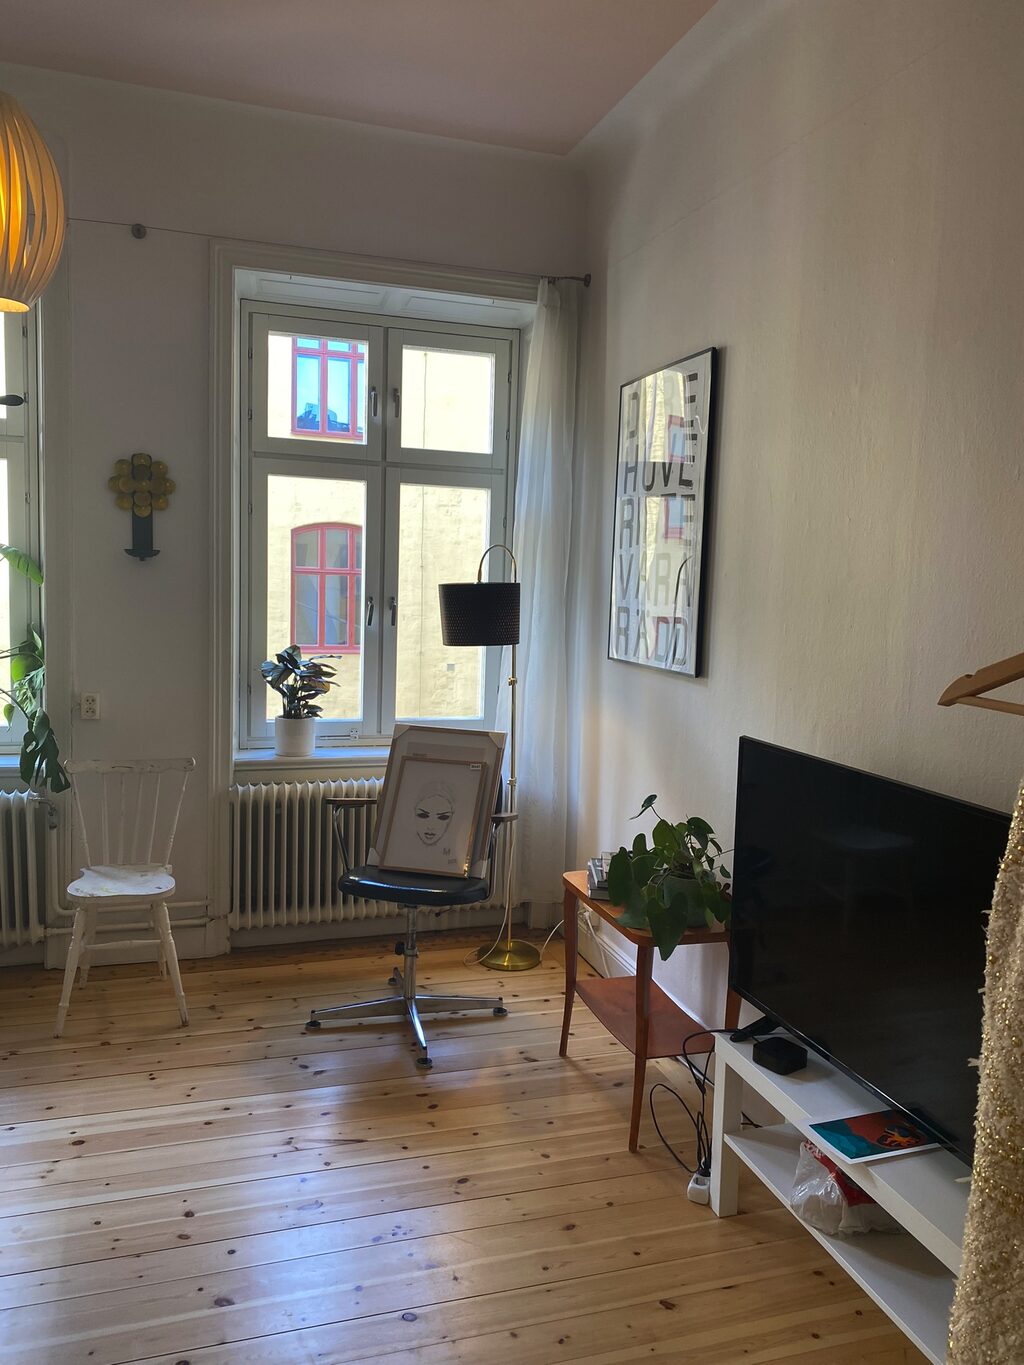 Lägenhetsbyte - Västmannagatan 73, 113 26 Stockholm